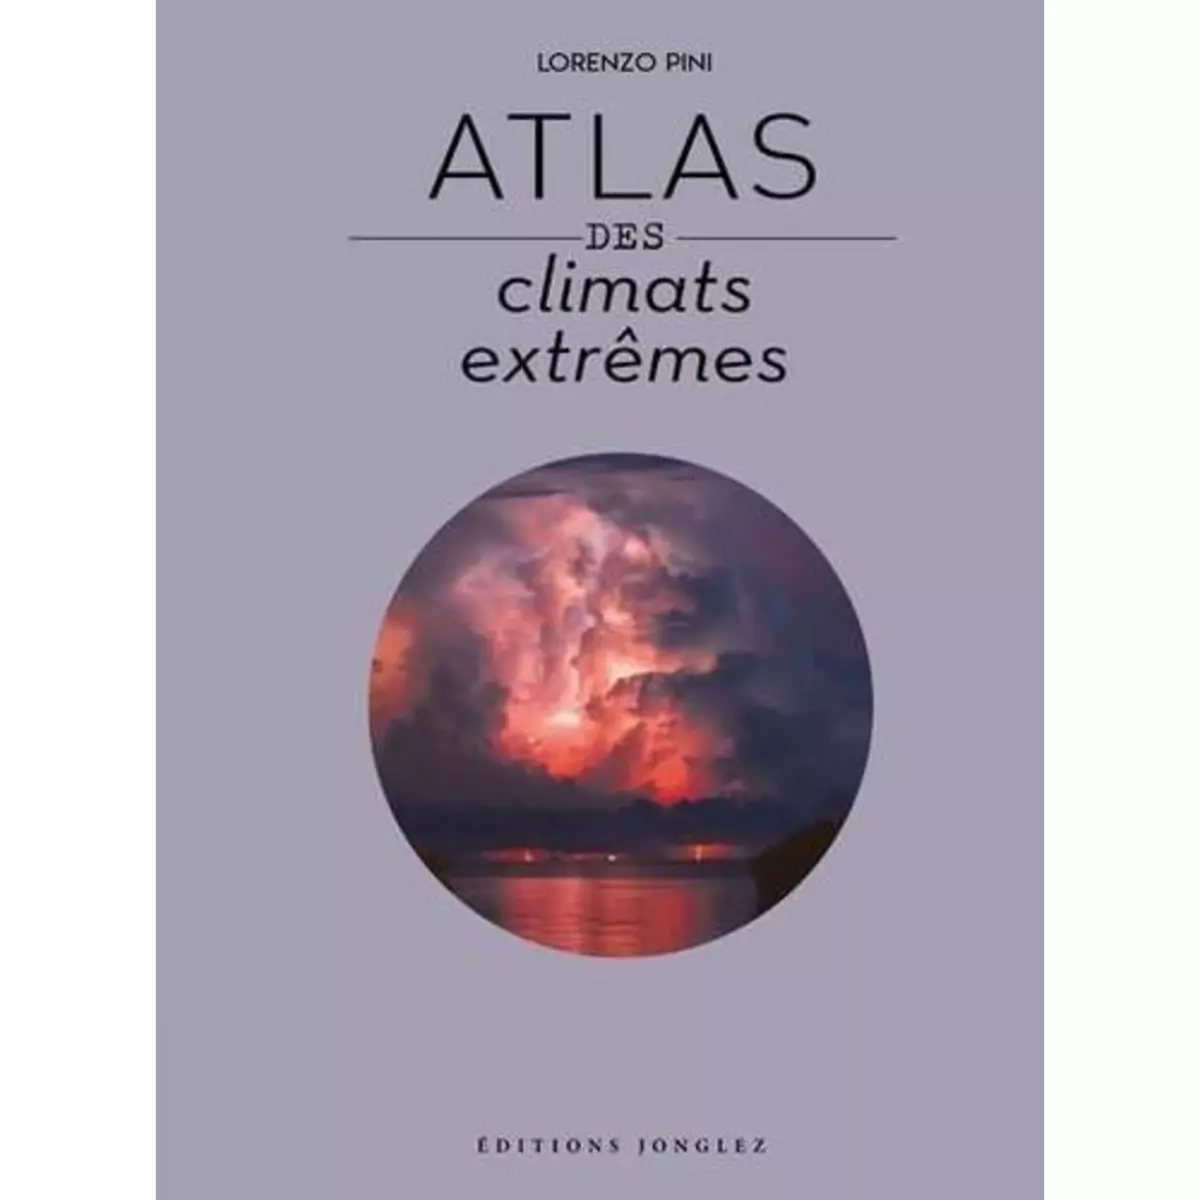  ATLAS DES CLIMATS EXTREMES, Pini Lorenzo